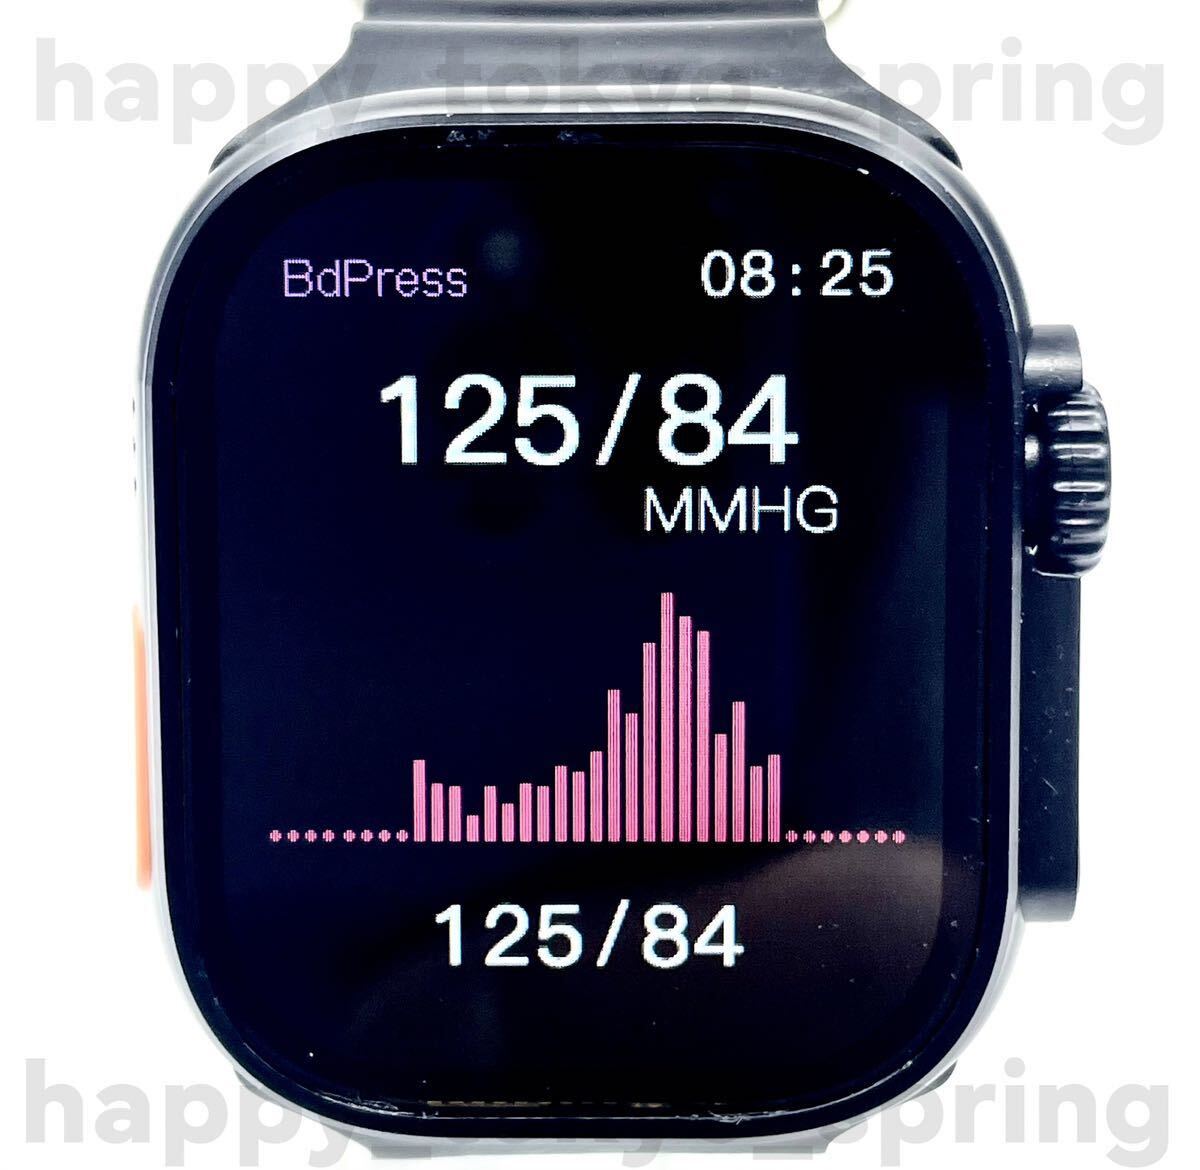  новый товар Watch9 Pro Max большой экран частота 7 вид смарт-часы телефонный разговор музыка многофункциональный здоровье . средний кислород кровяное давление Apple Watch9 товар-заменитель 